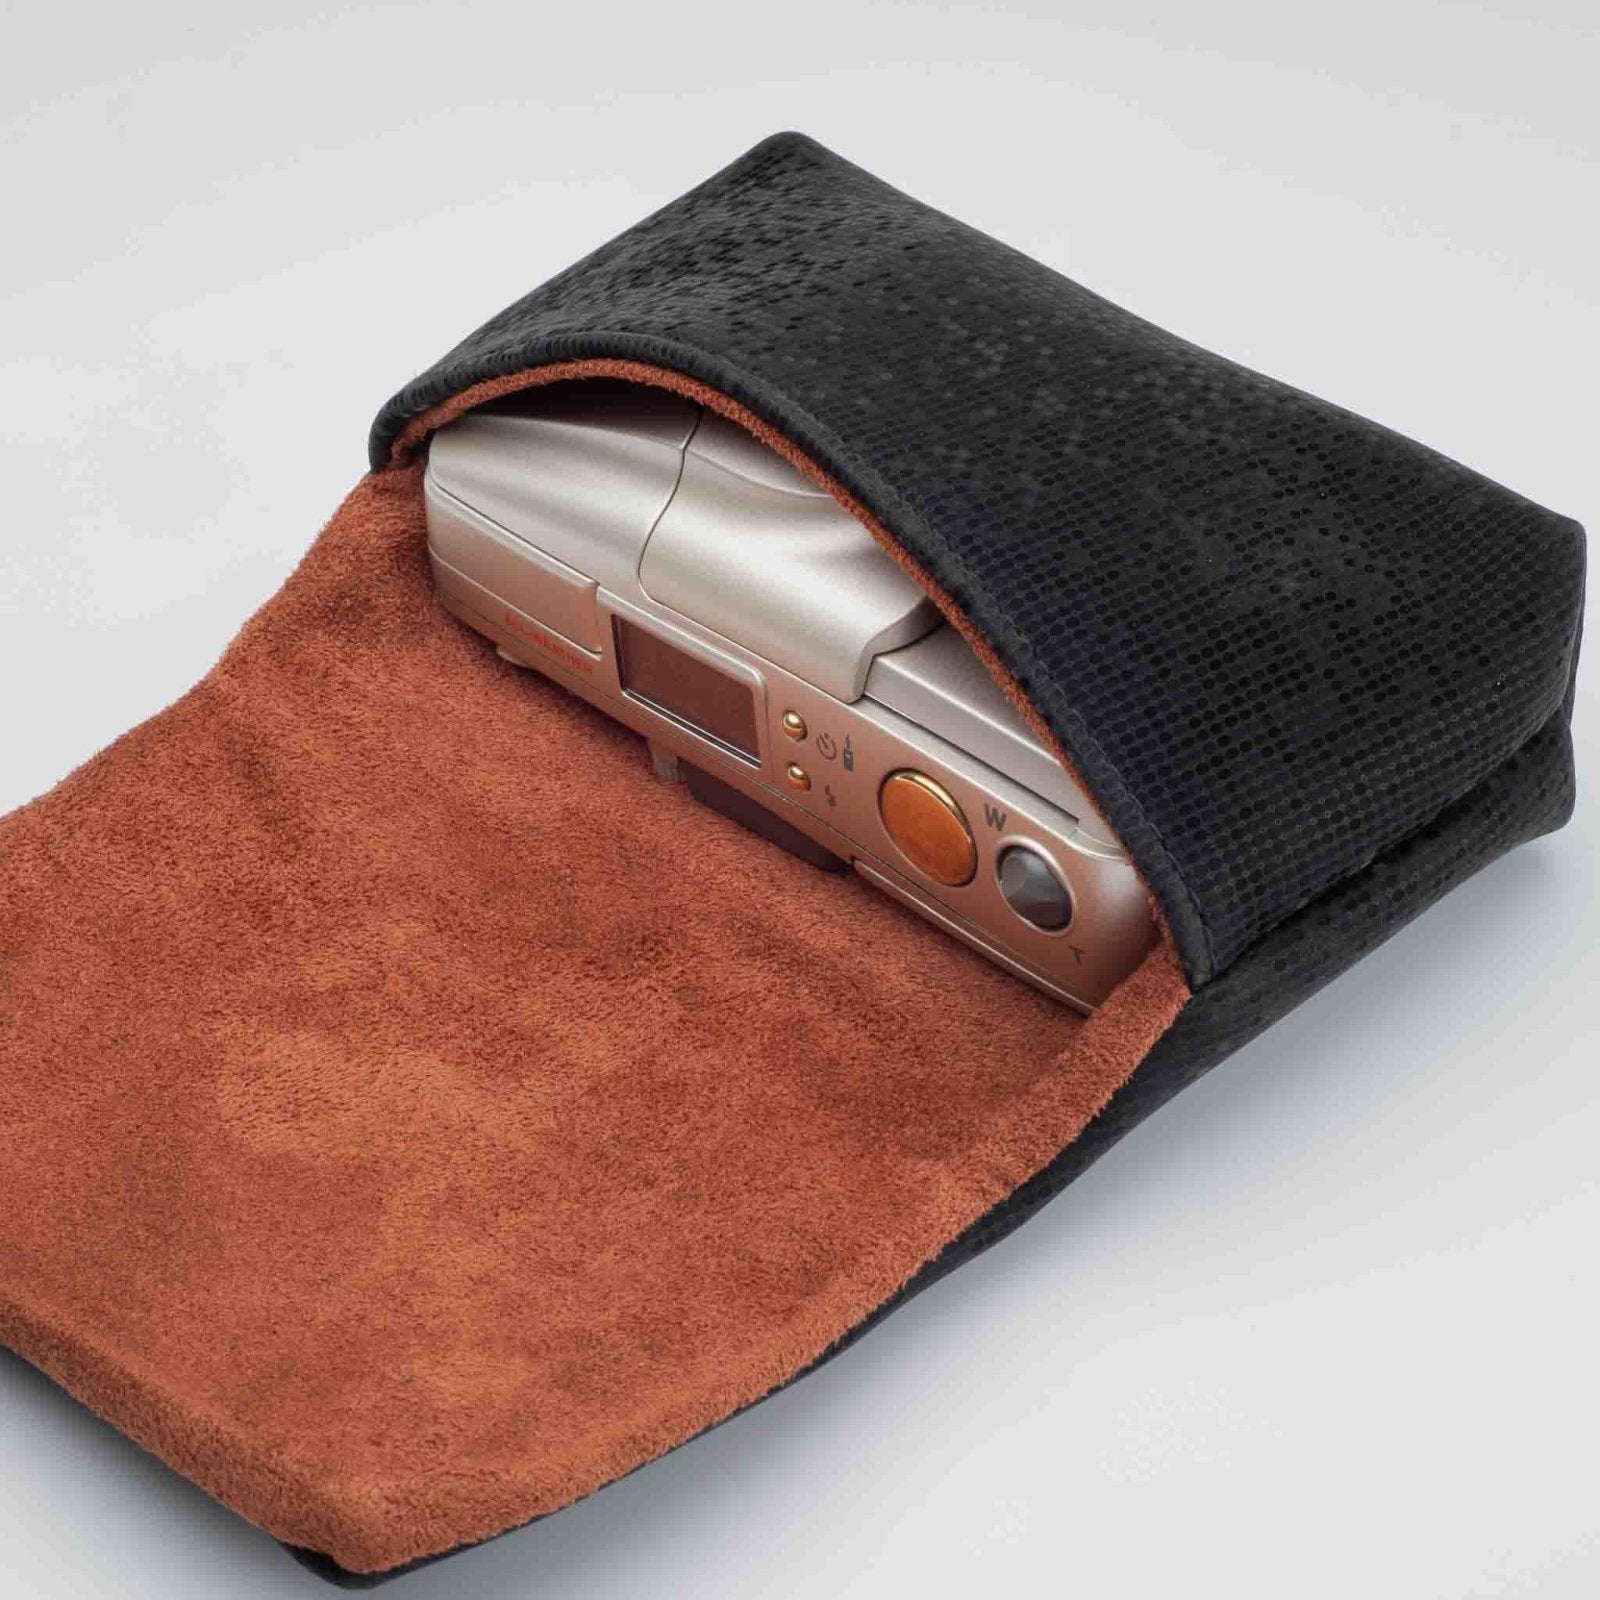 Fabric Soft Case Cover Camera Bag Pouch - Camera Kangaroo